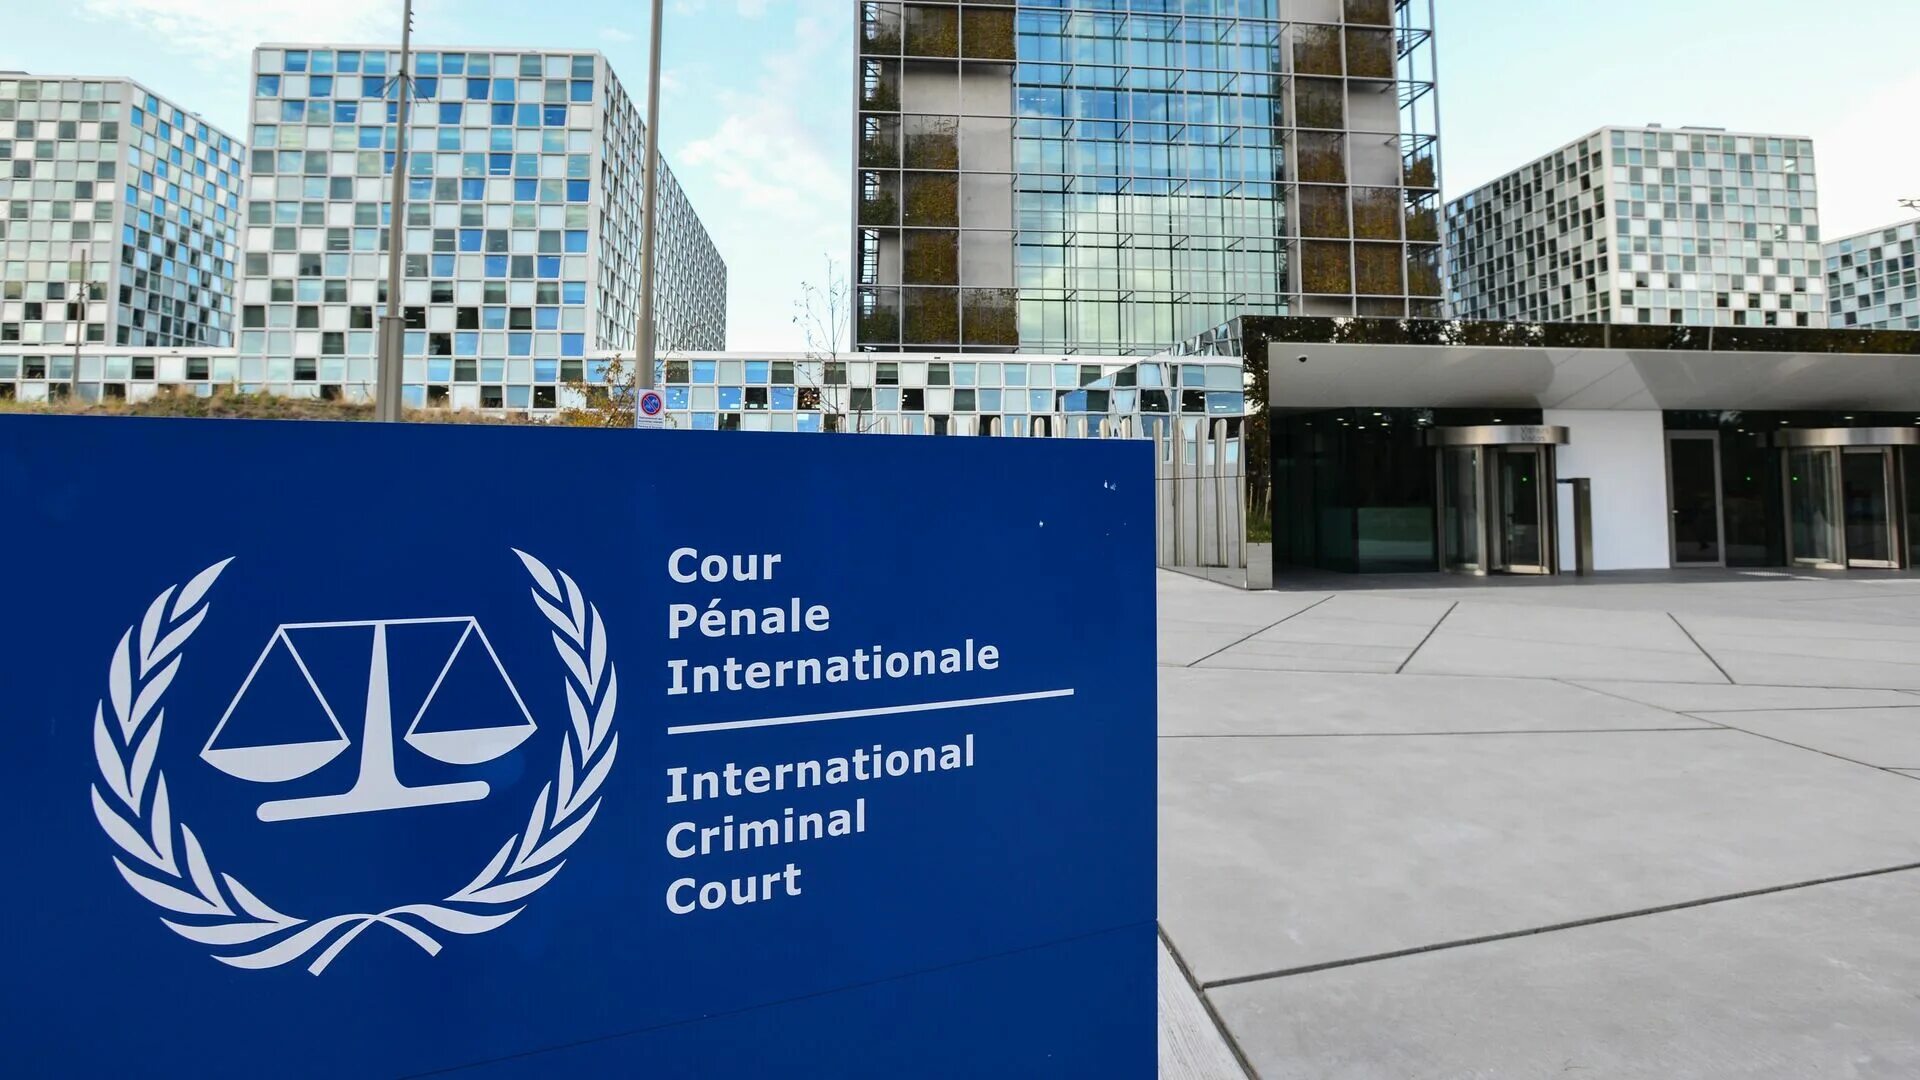 Международный Уголовный суд в Гааге. Международный Уголовный суд в Гааге здание. Международный Уголовный трибунал (Гаага). Международного уголовного суда (МУС) В Гааге.